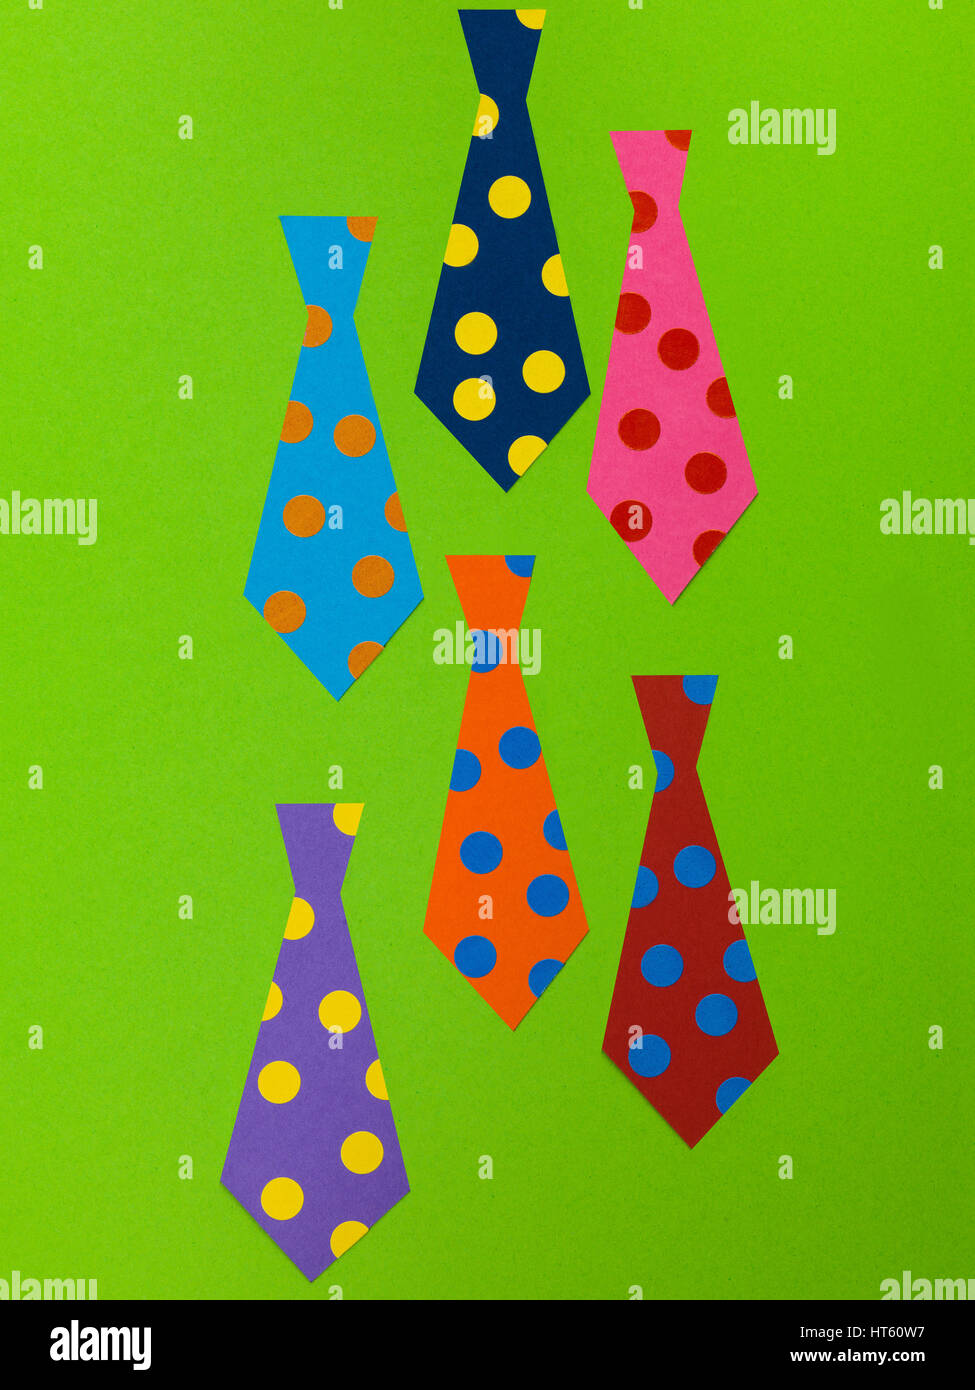 Illustration der Herren Krawatten geschmückt mit farbigen Punkten oder Flecken auf einem grünen Hintergrund Stockfoto